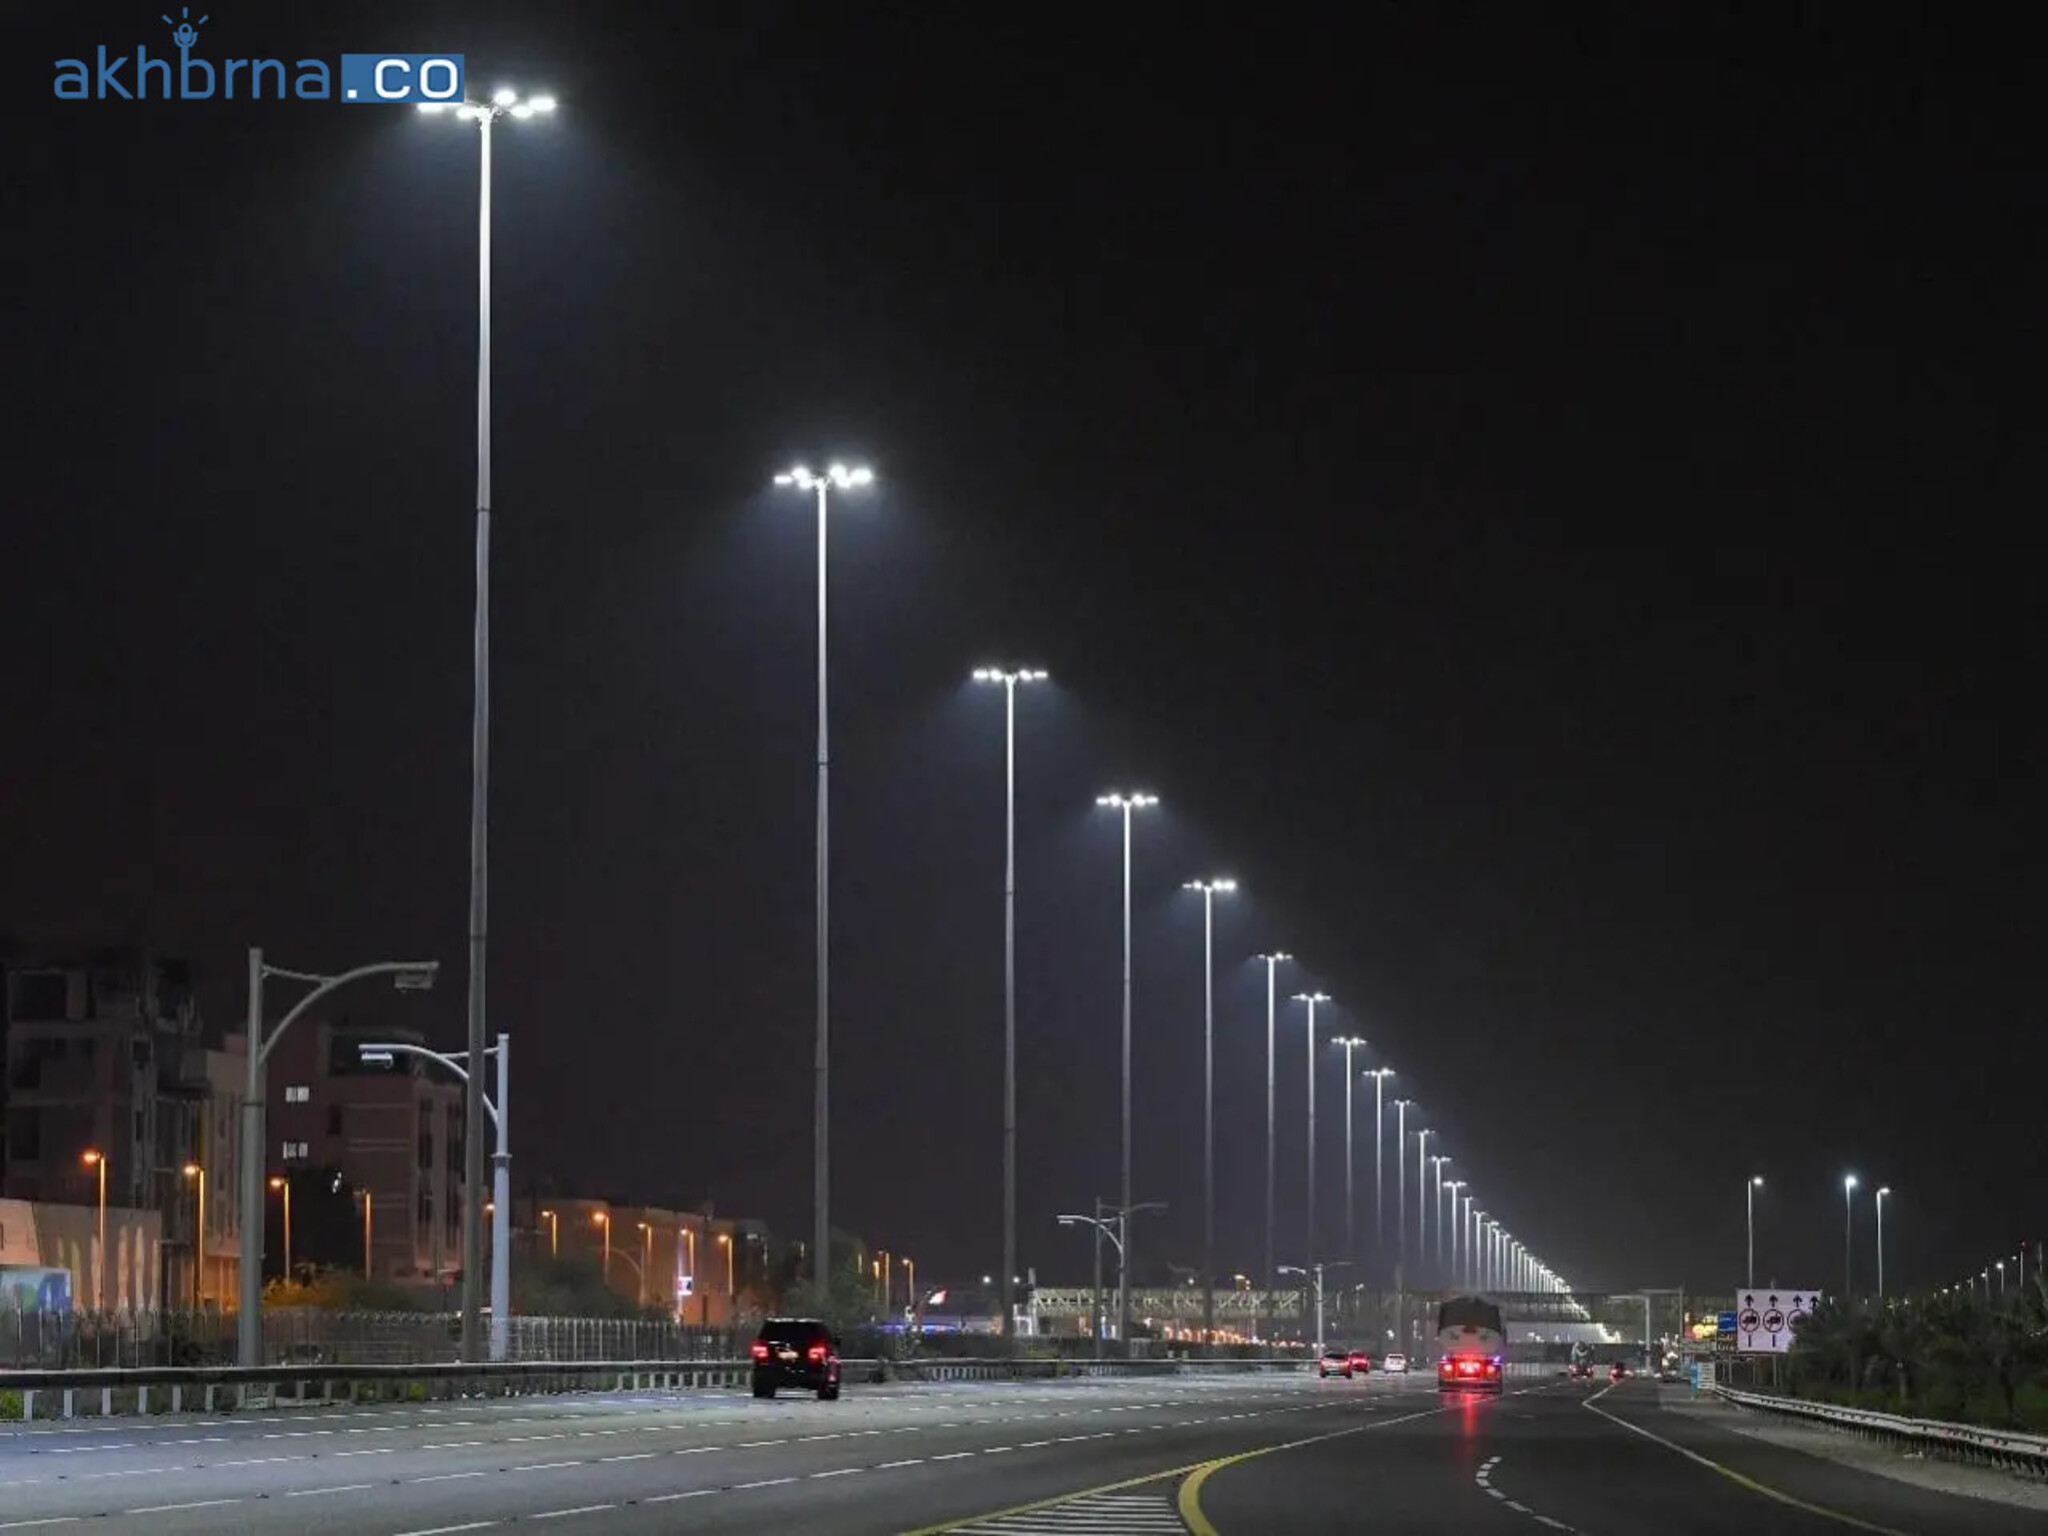 Dubai Roads Authority upgrades Sheikh Rashid St. to energy-efficient LED lights